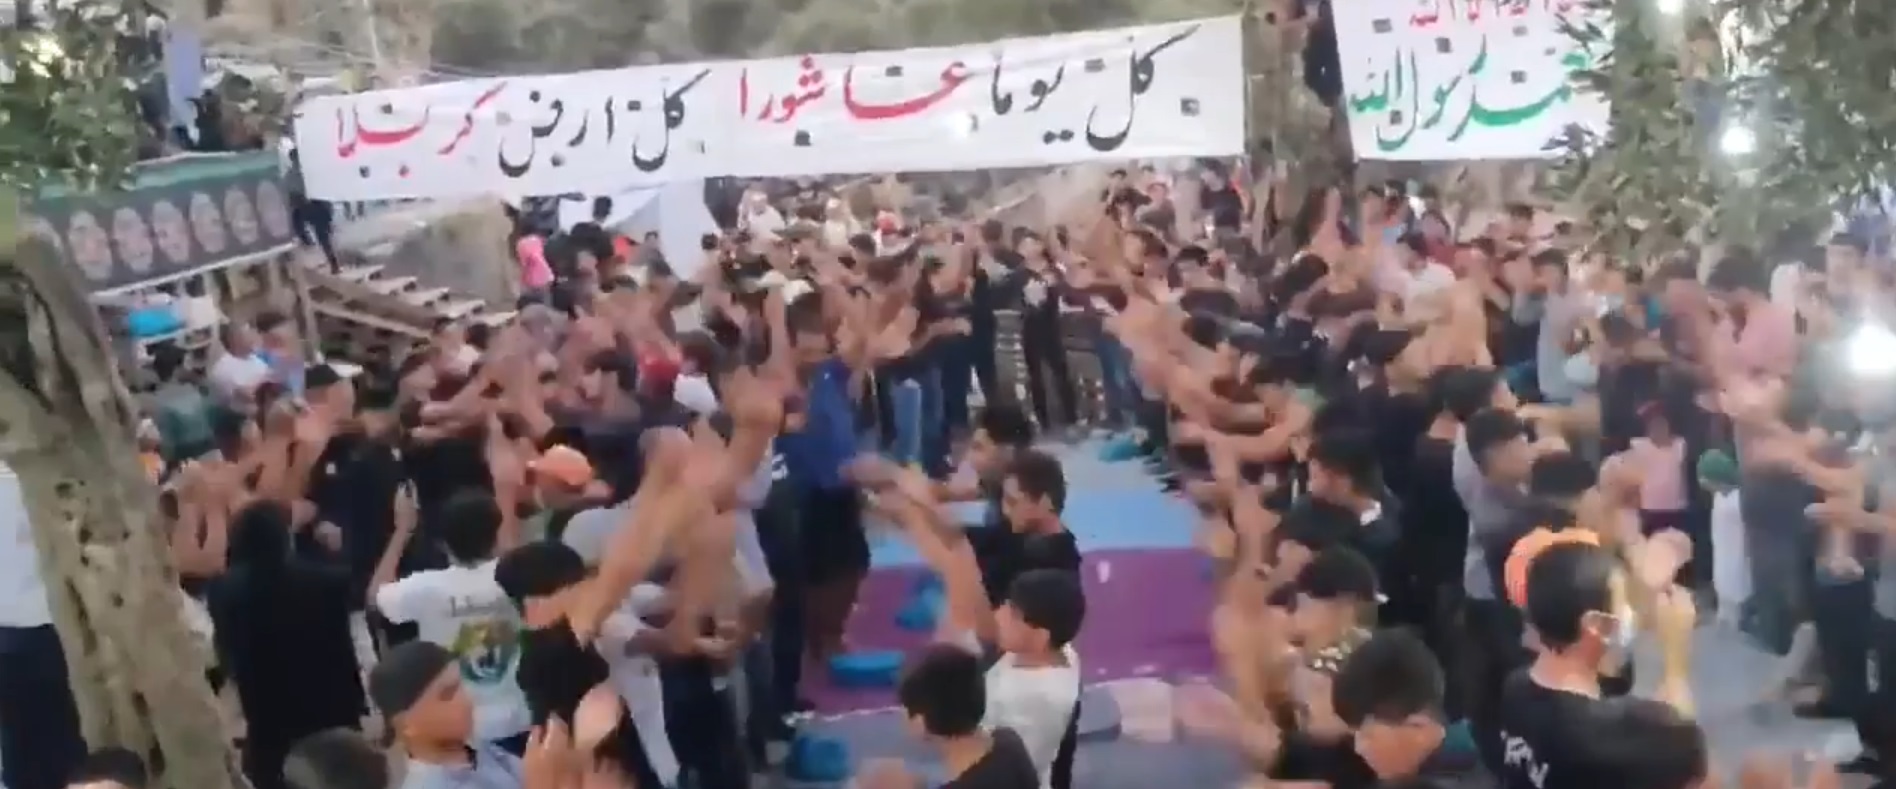 Έτσι αυξήθηκαν τα κρούσματα στη Μόρια: Βίντεο με ισλαμικές τελετές εντός του ΚΥΤ